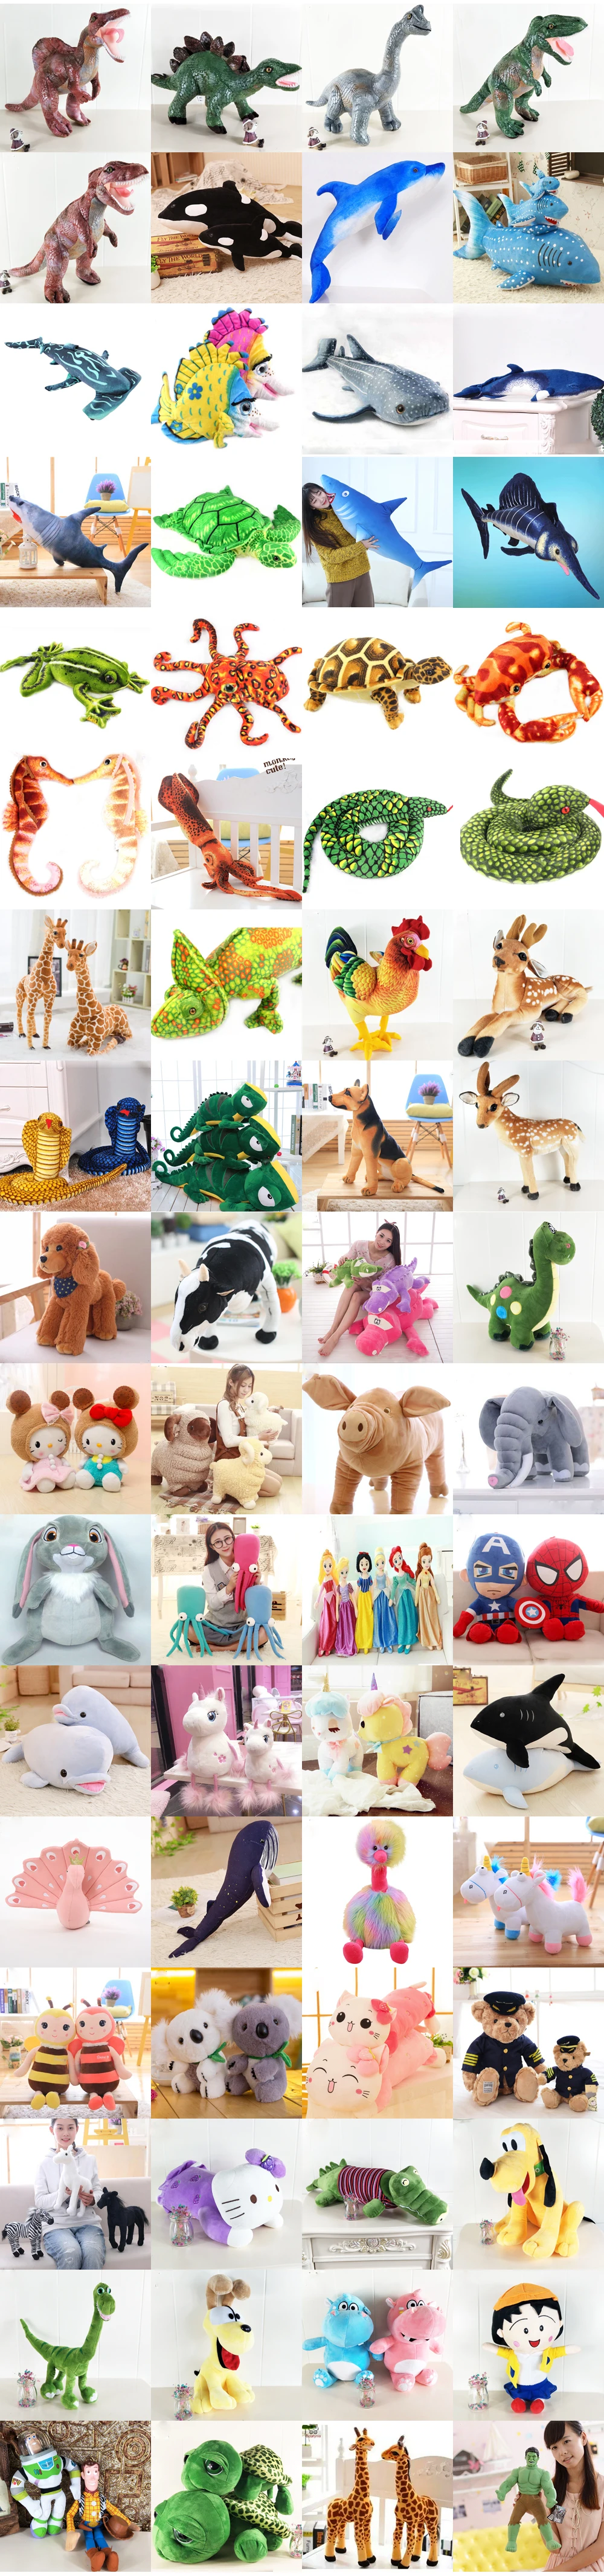 BOLAFINIA лесных животных Тигр Слон Лев детские плюшевые игрушки подарок на день рождения для детей Рождество День рождения плюшевые игрушки